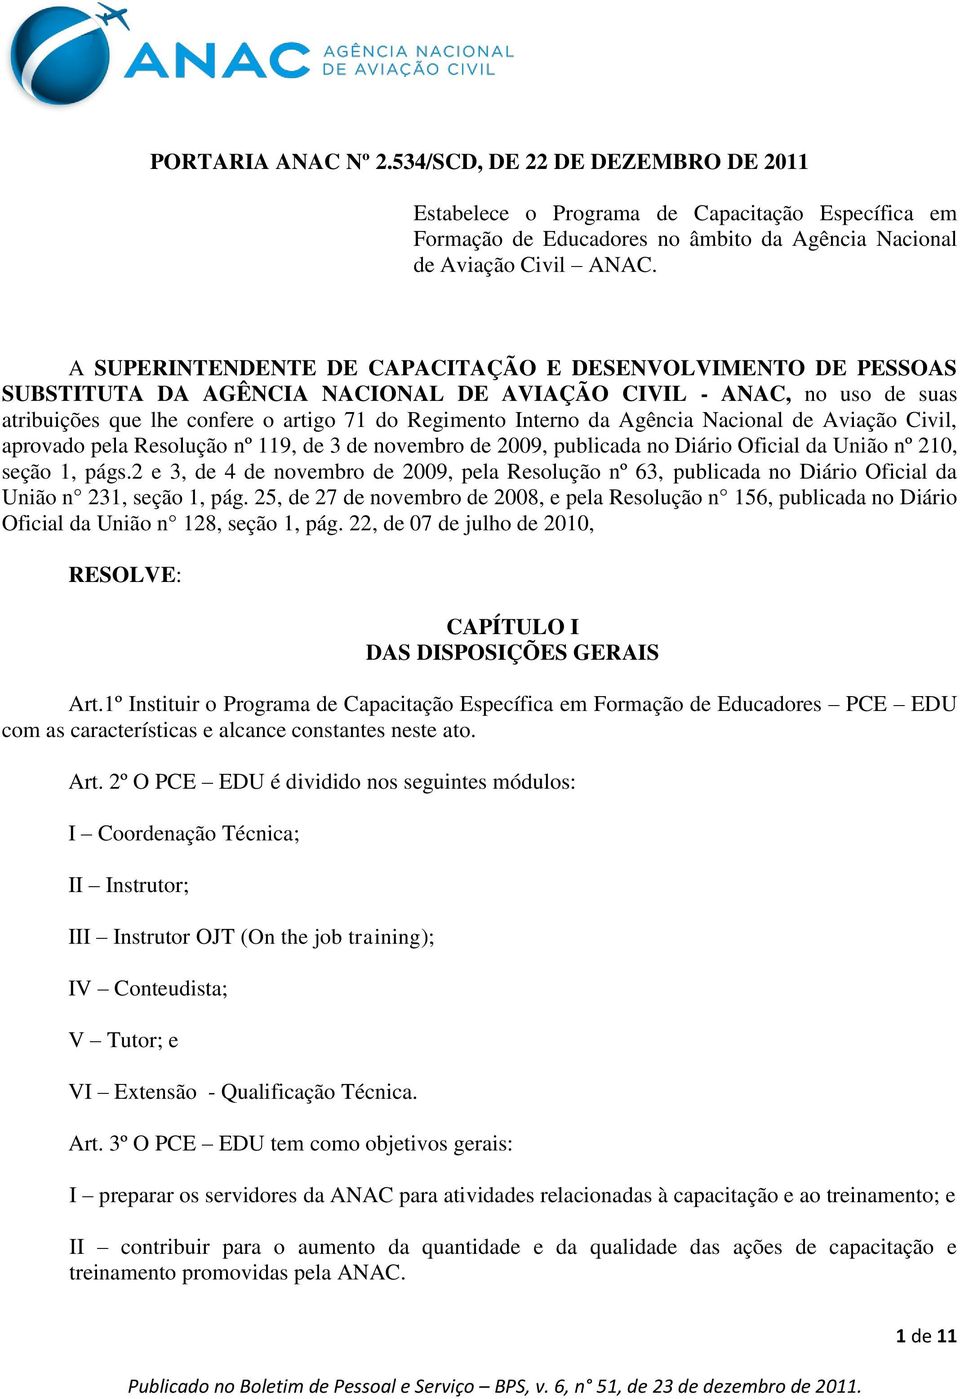 Agência Nacional de Aviação Civil, aprovado pela Resolução nº 119, de 3 de novembro de 2009, publicada no Diário Oficial da União nº 210, seção 1, págs.